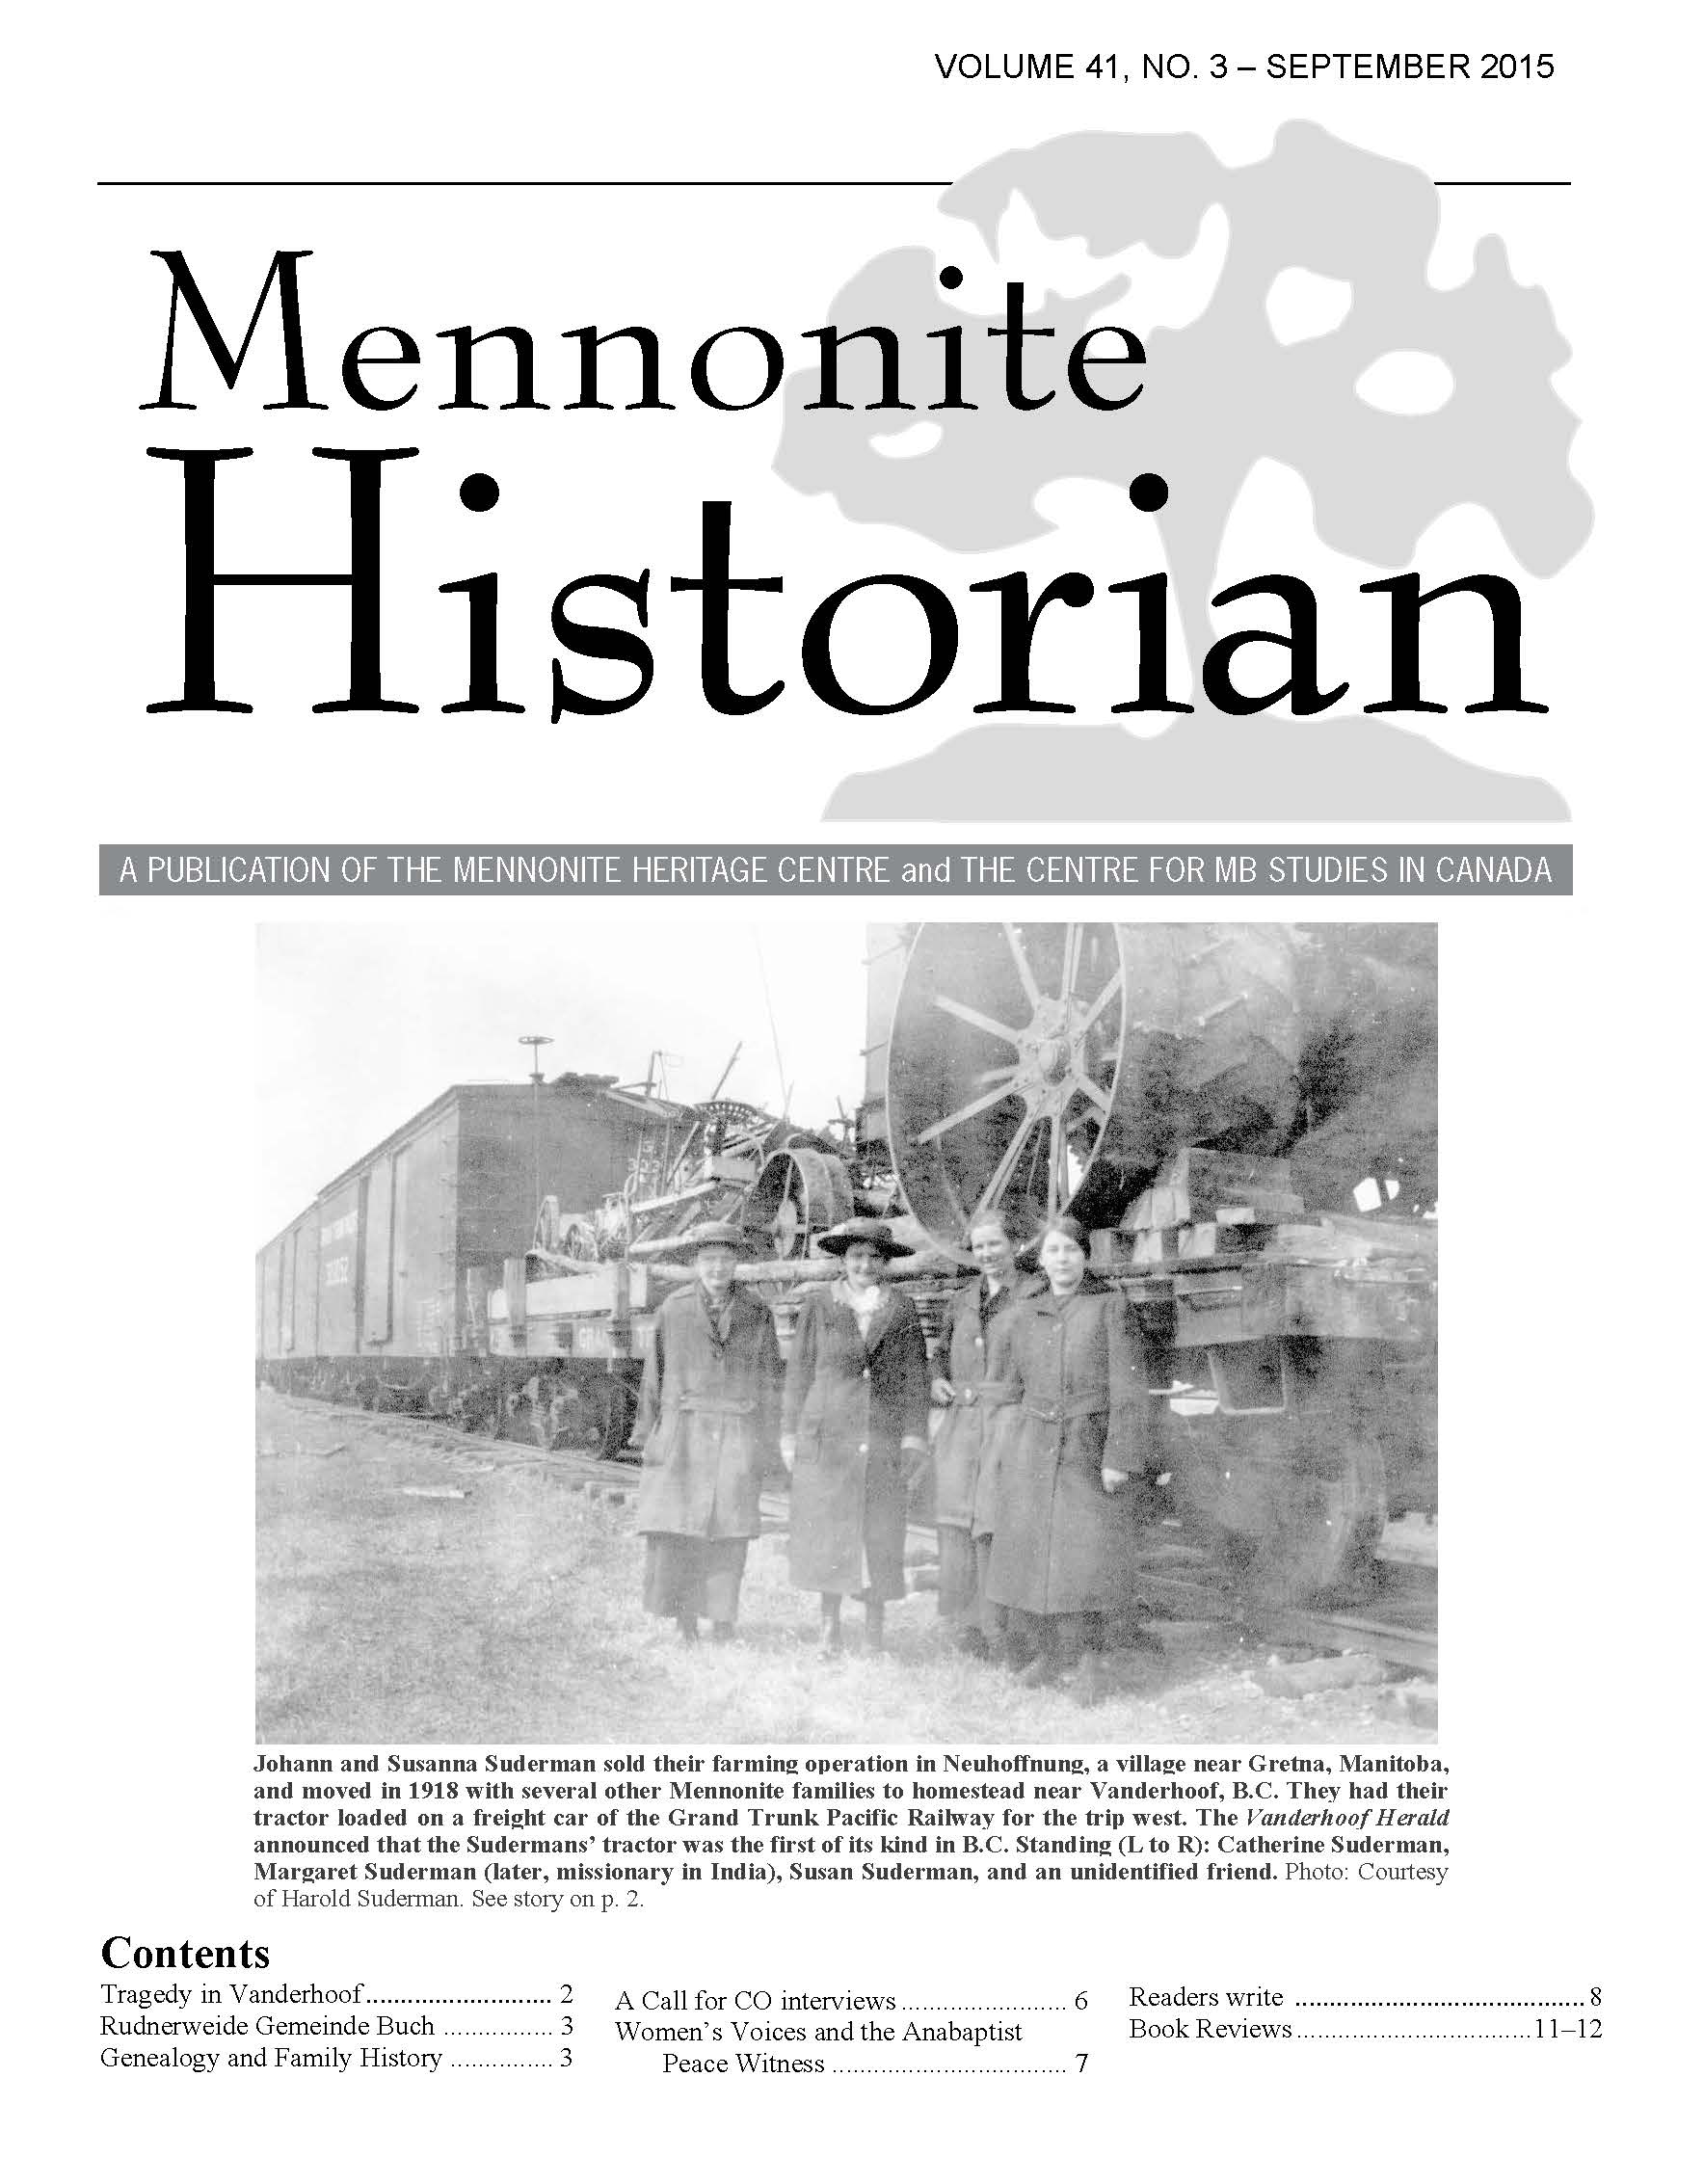 Mennonite Historian (September 2015)